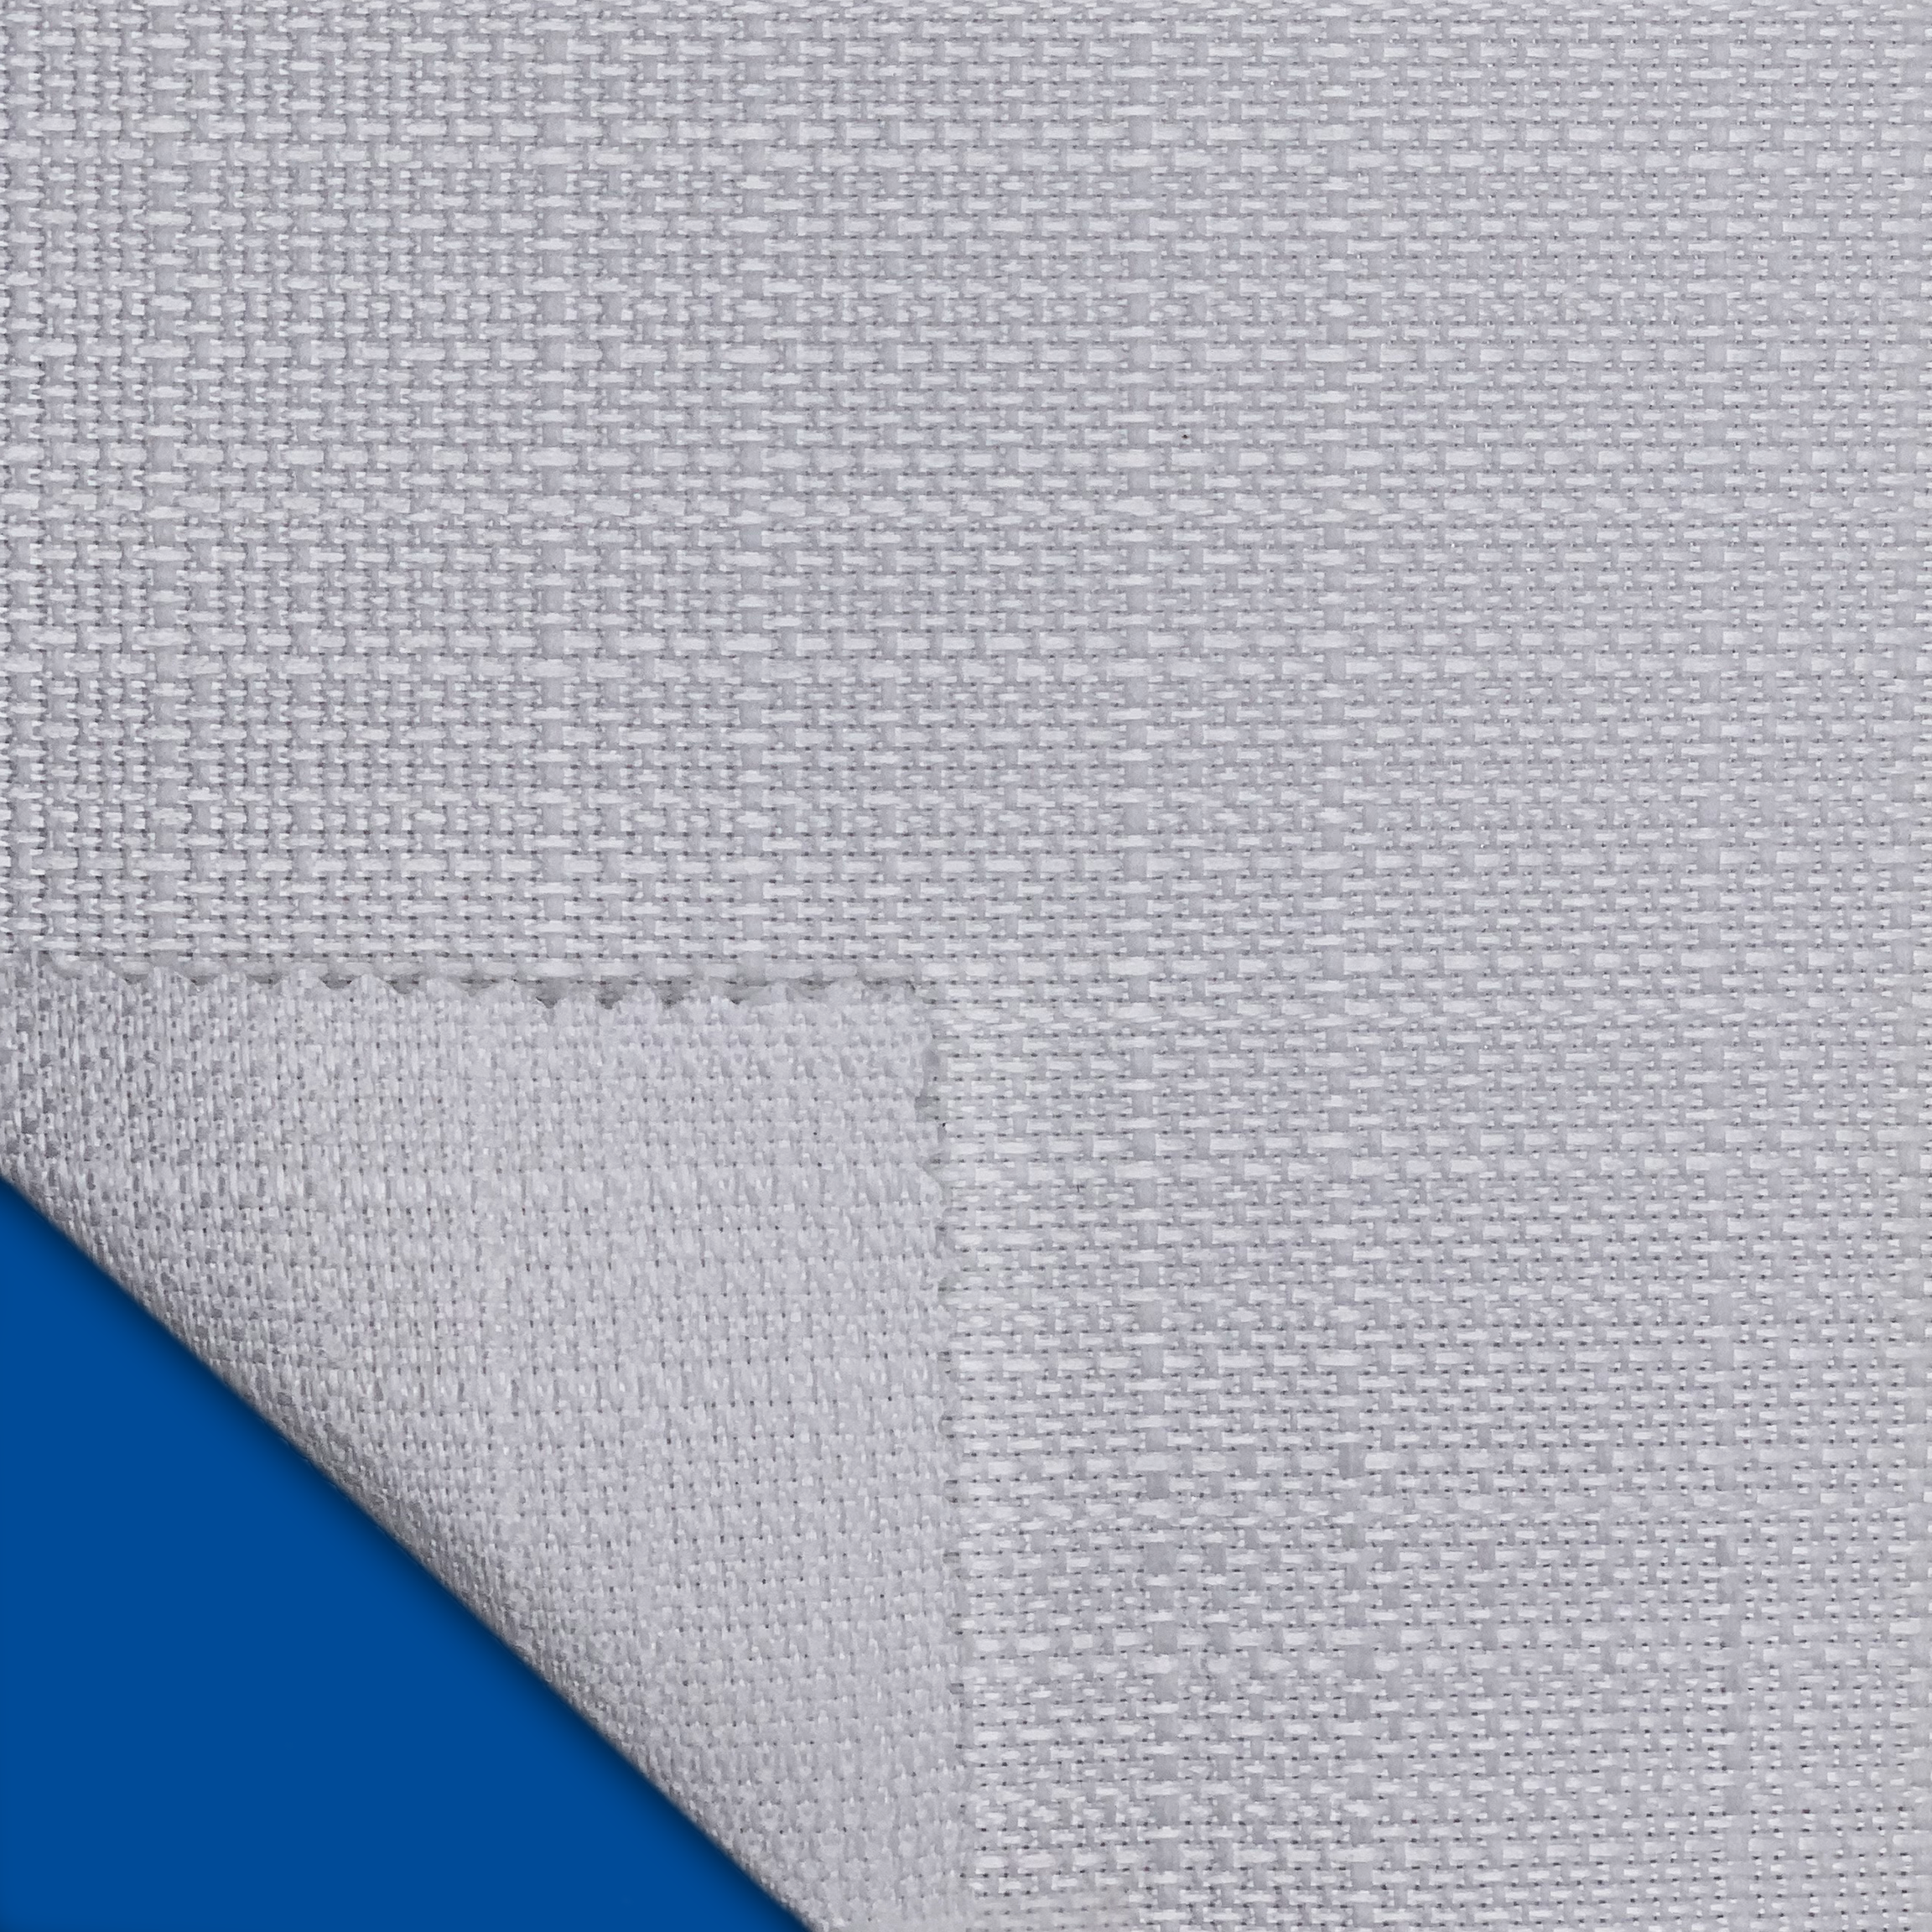 Sublimation Polyester Kissenbezug Mikrofaser Peache Cloth 40x40cm Lp-Cc-40pt 